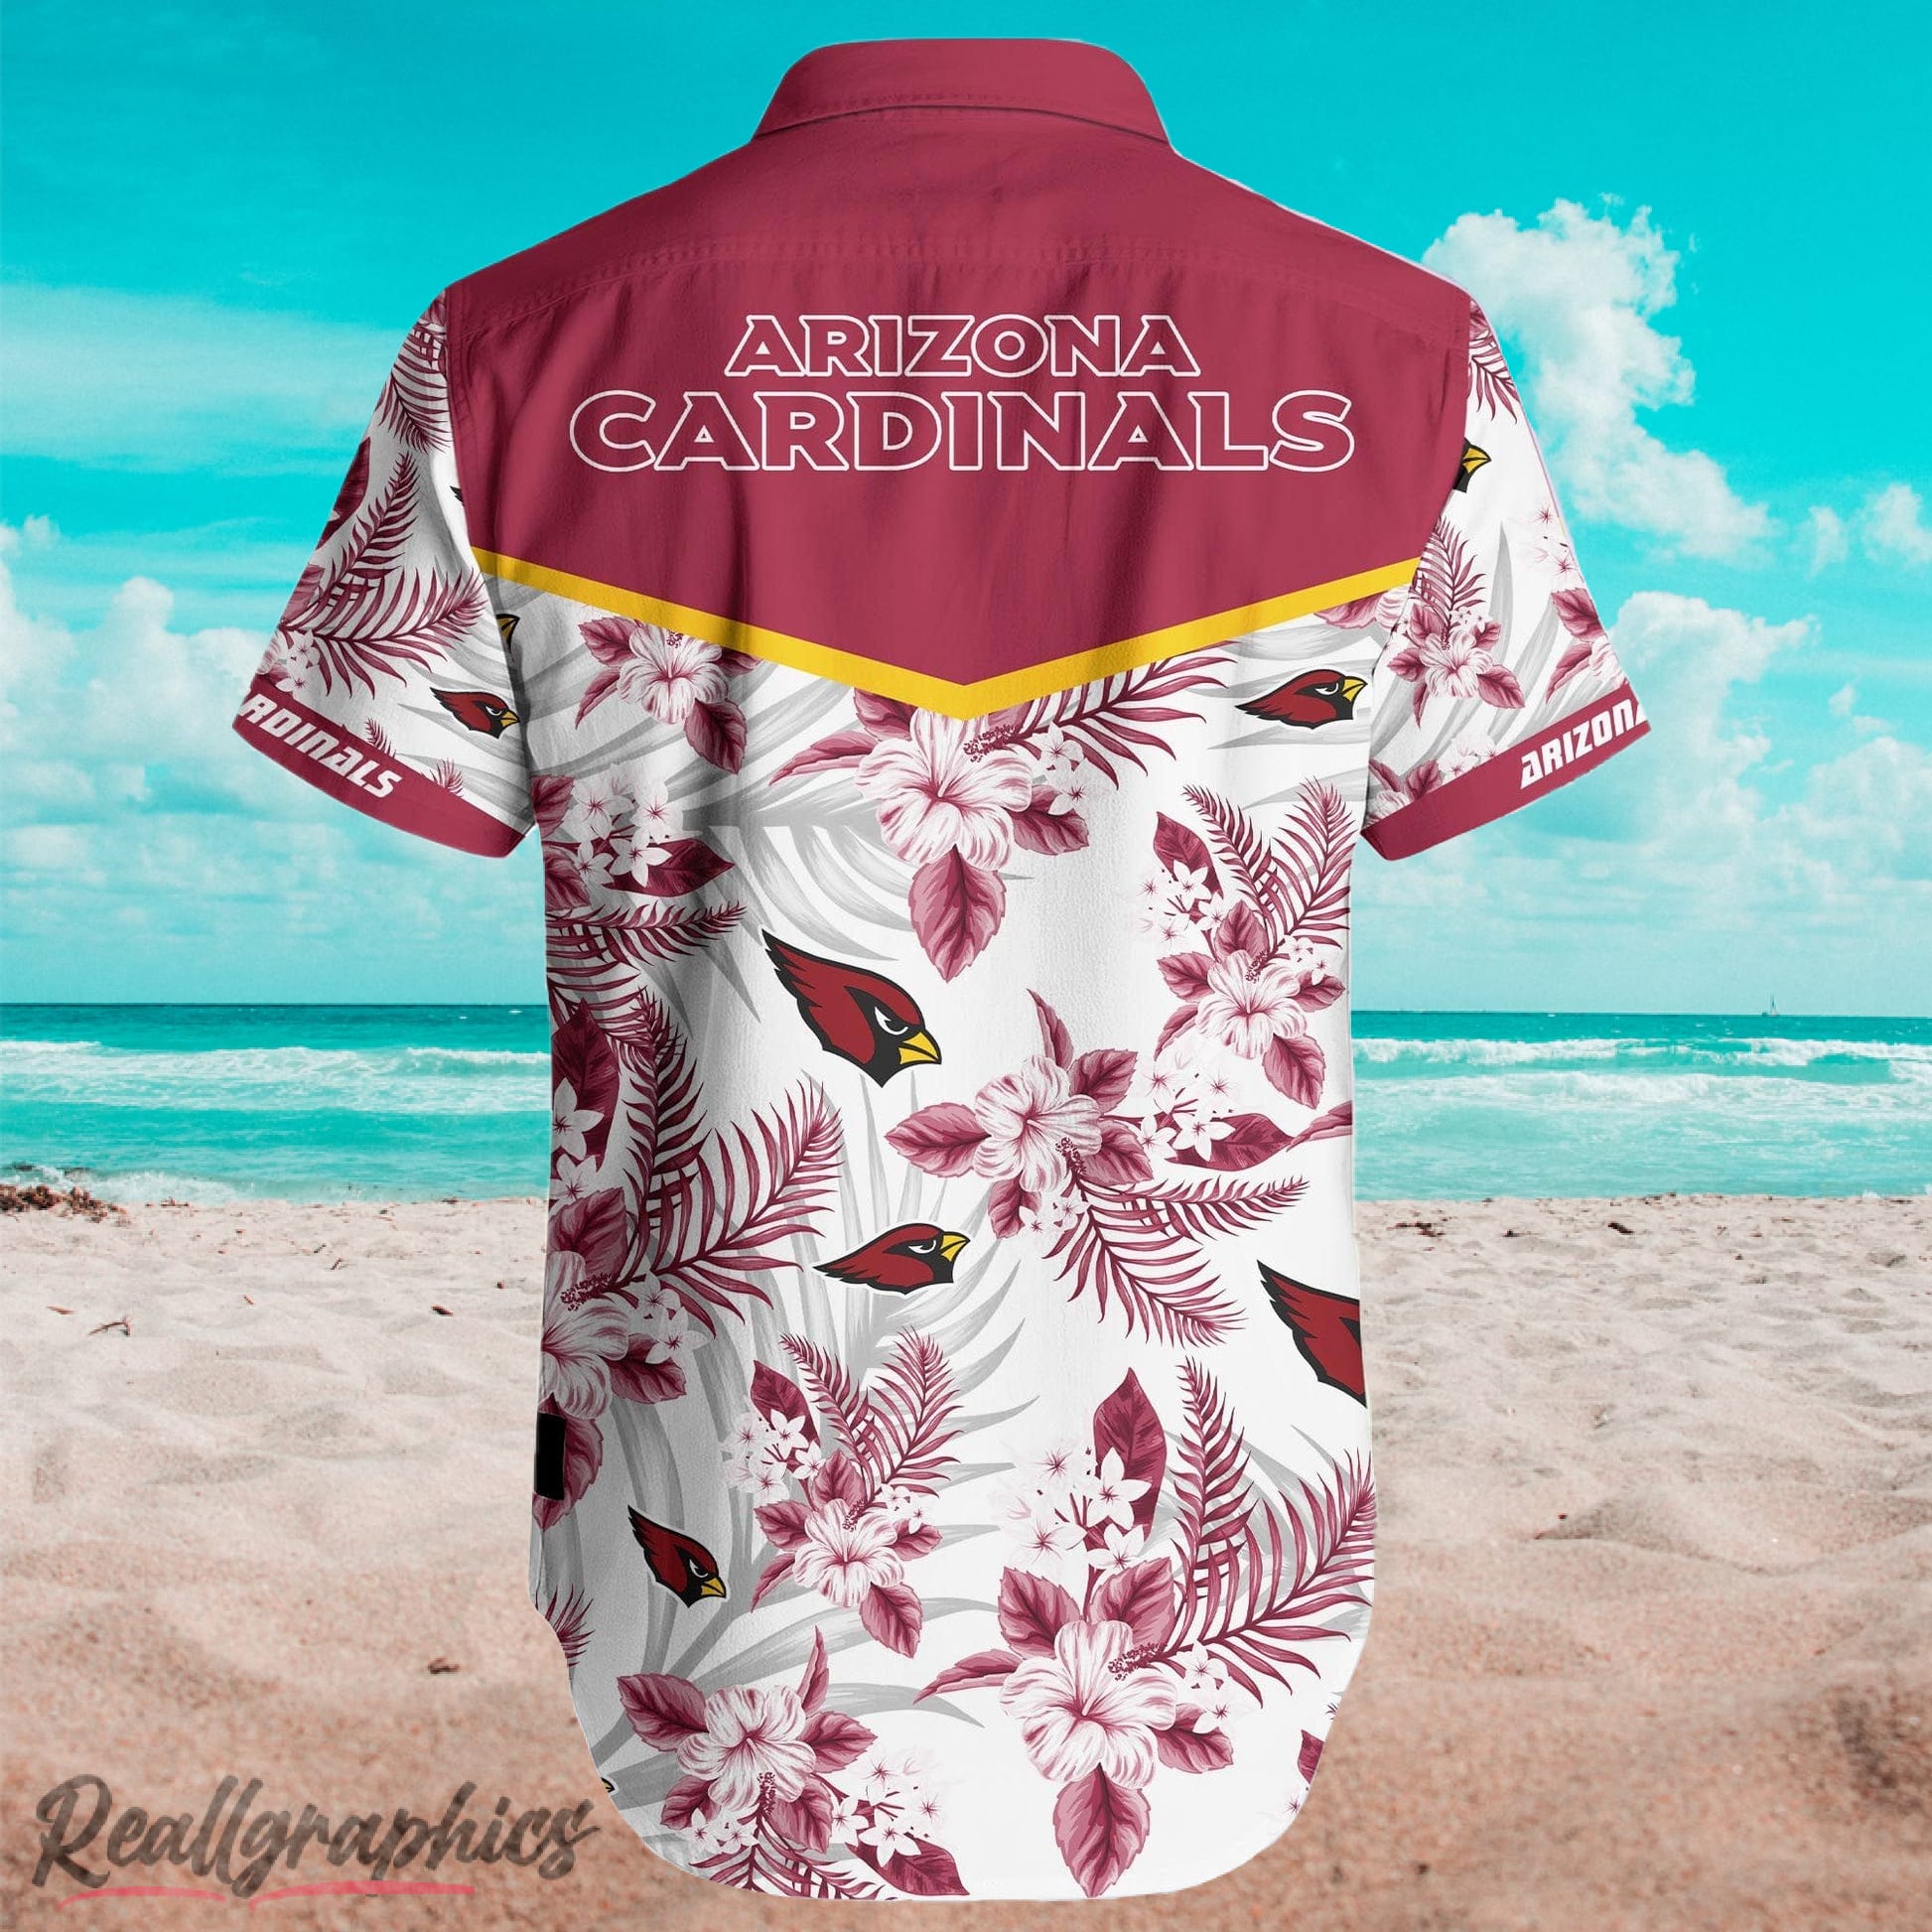 Kingkong X Arizona Cardinals Hawaiian Shirt